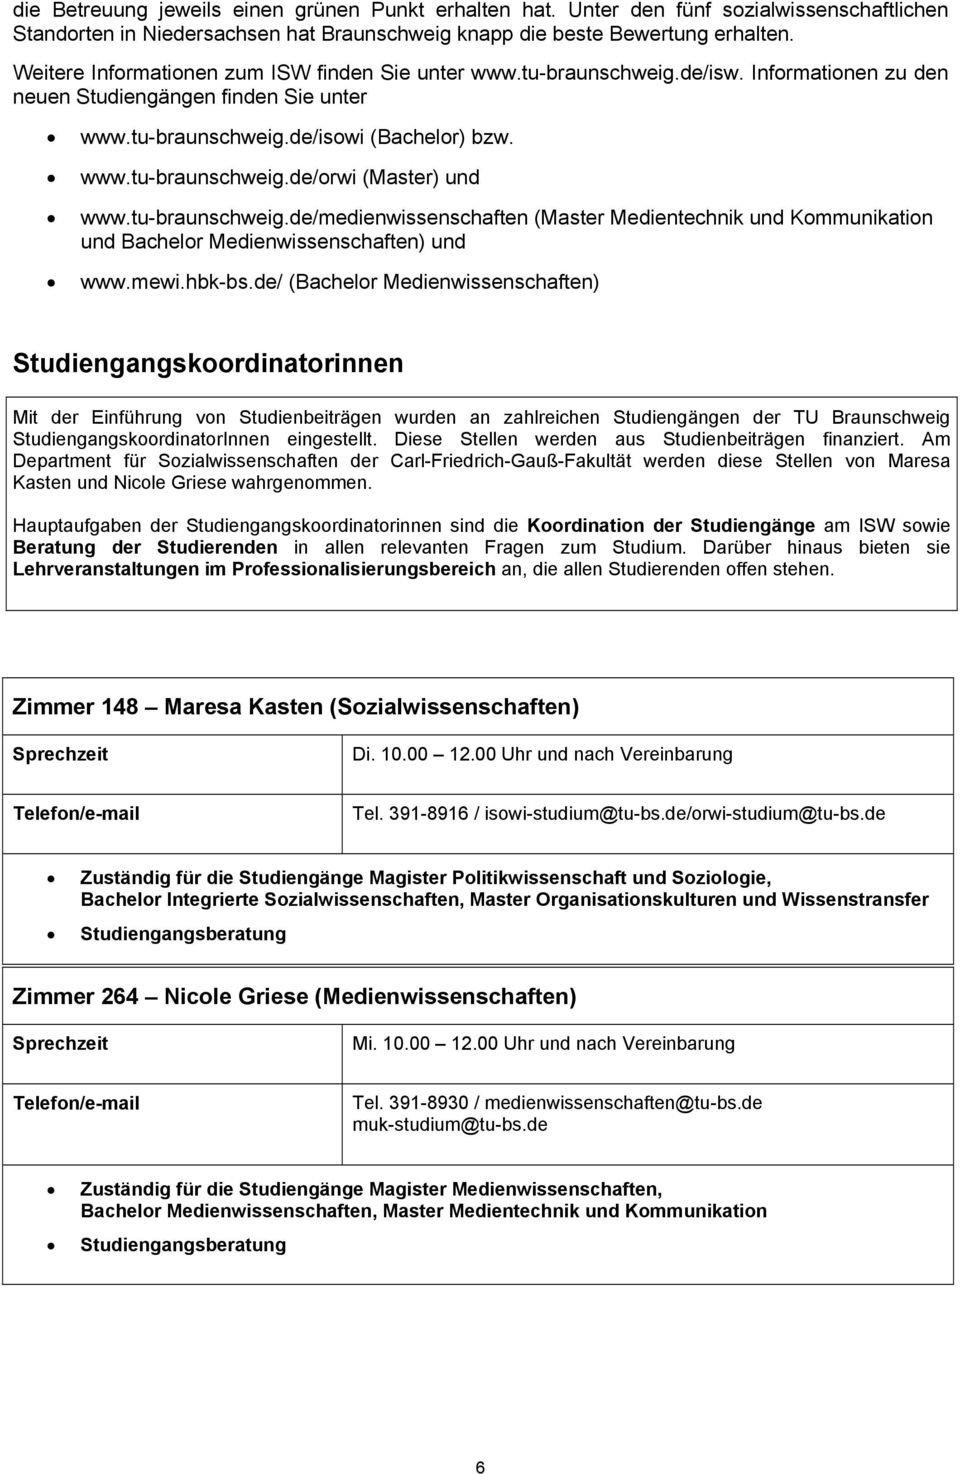 tu-braunschweig.de/medienwissenschaften (Master Medientechnik und Kommunikation und Bachelor Medienwissenschaften) und www.mewi.hbk-bs.